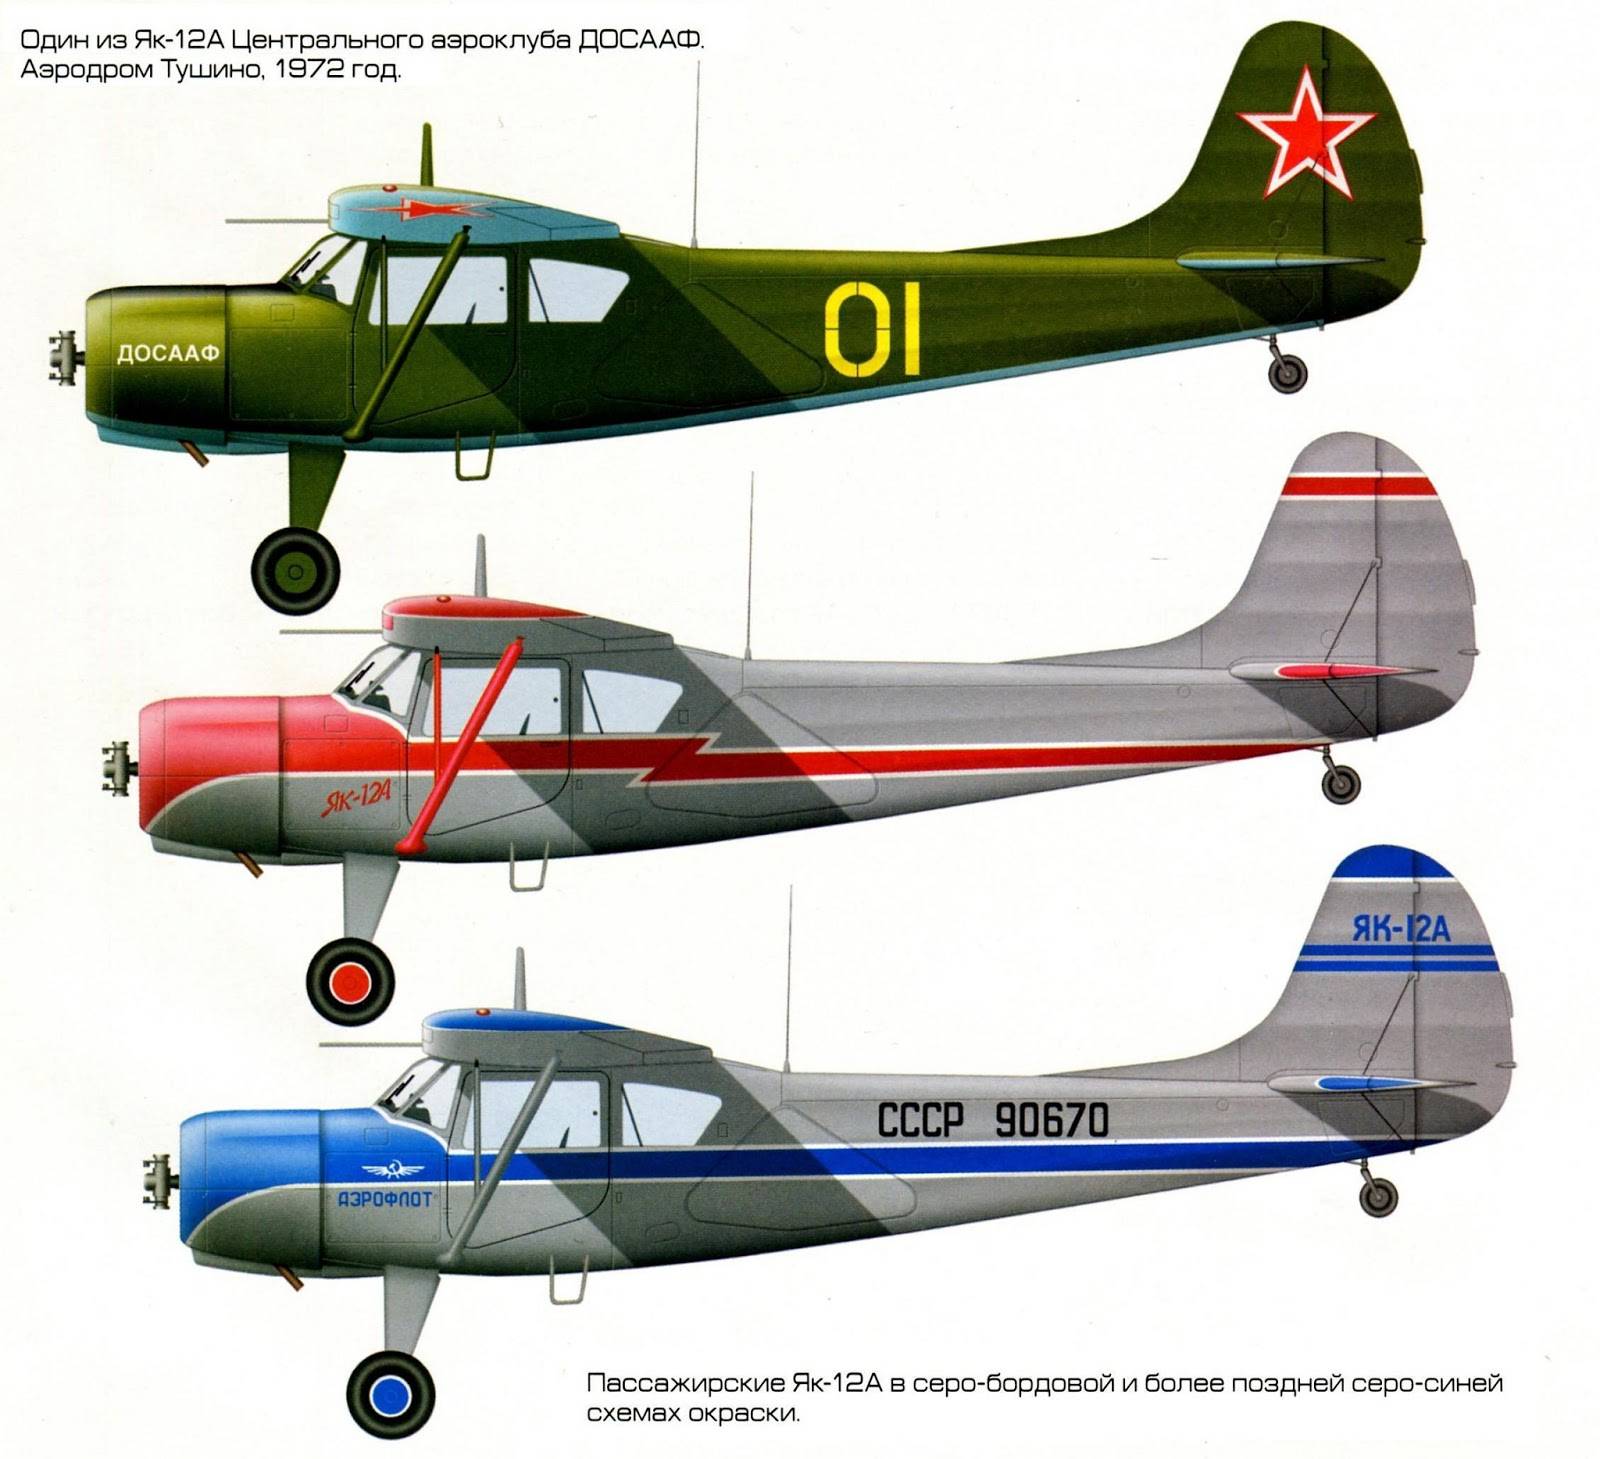 Истребитель миг-23 - советский самолет, история создания и использование, особенности конструкции и вооружение, характеристики и задачи, достоинства и недостатки, модификации